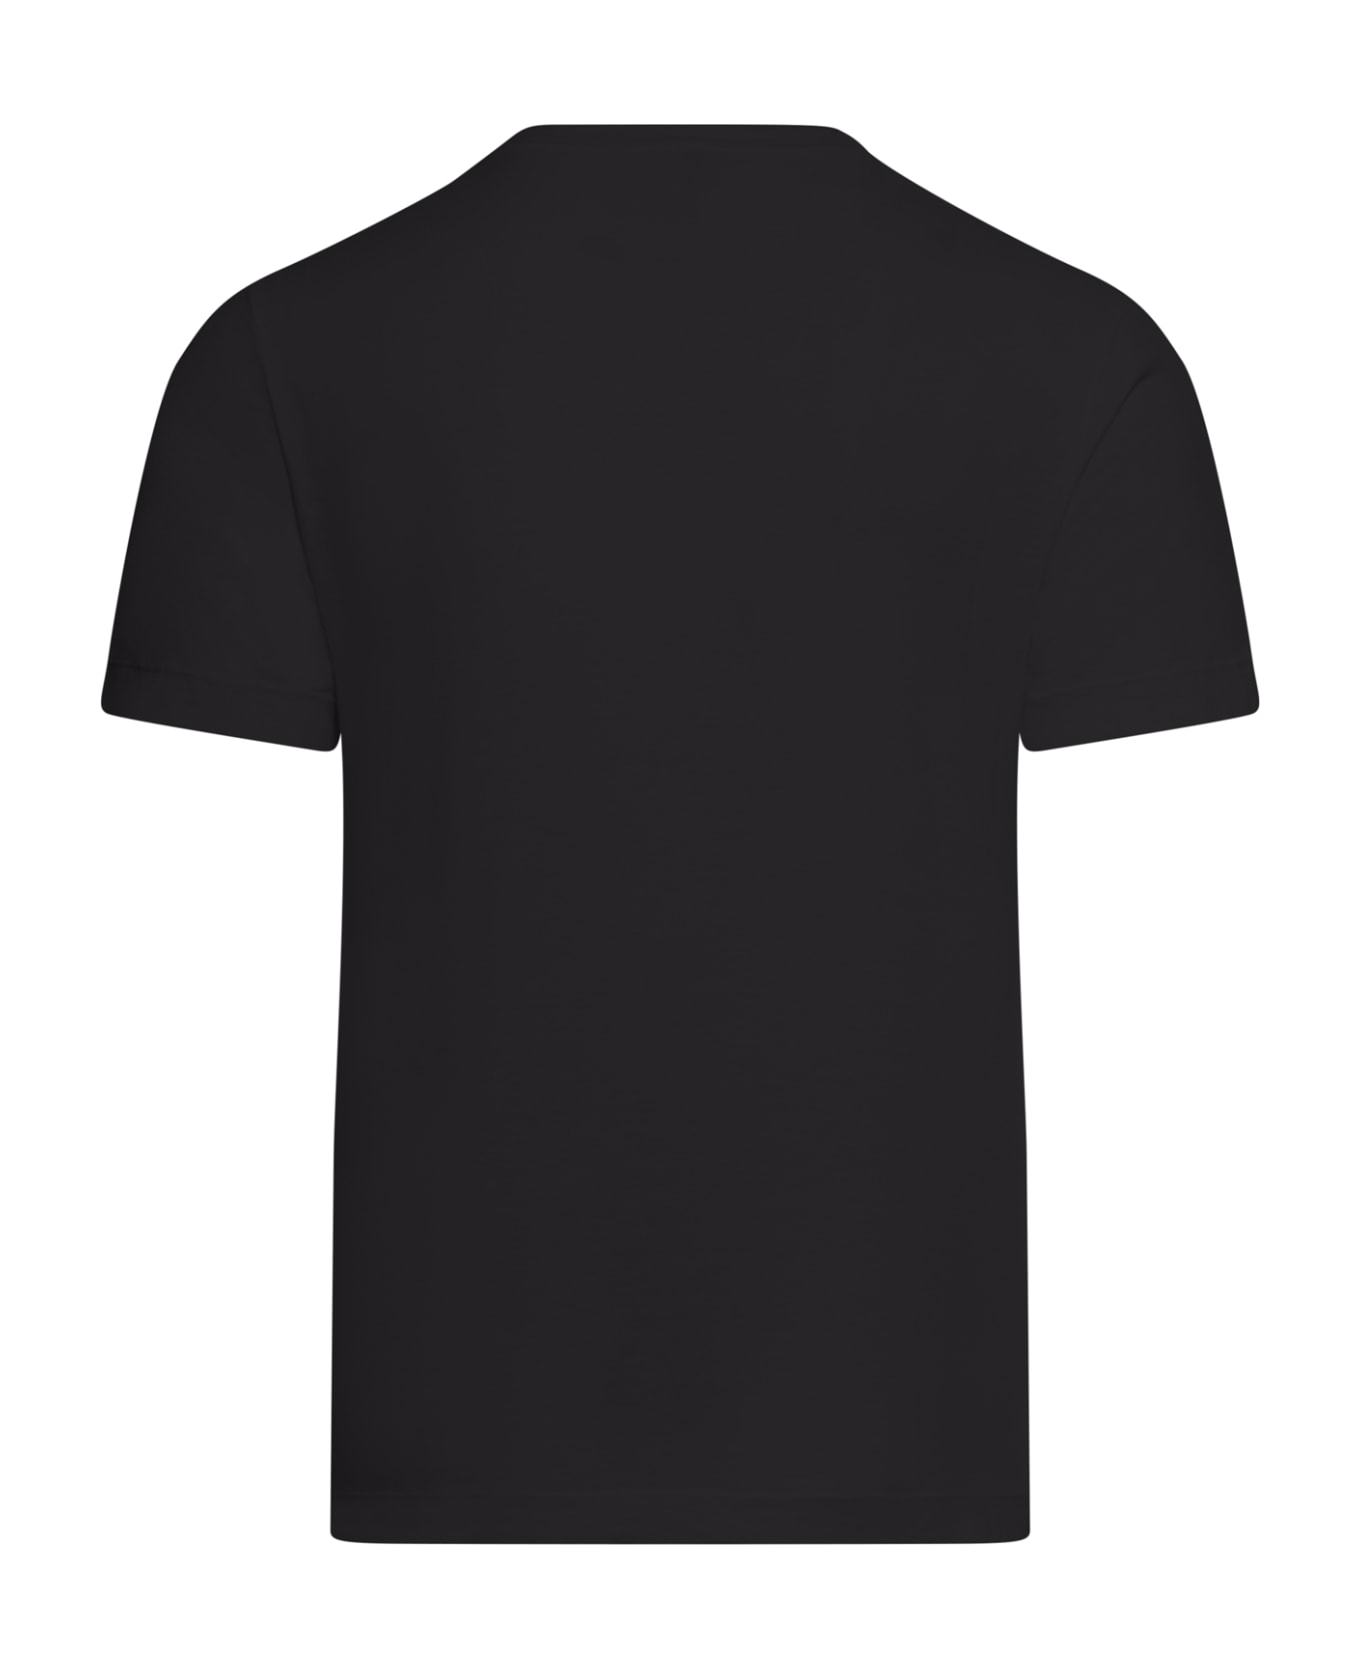 Transit Tshirt - Black